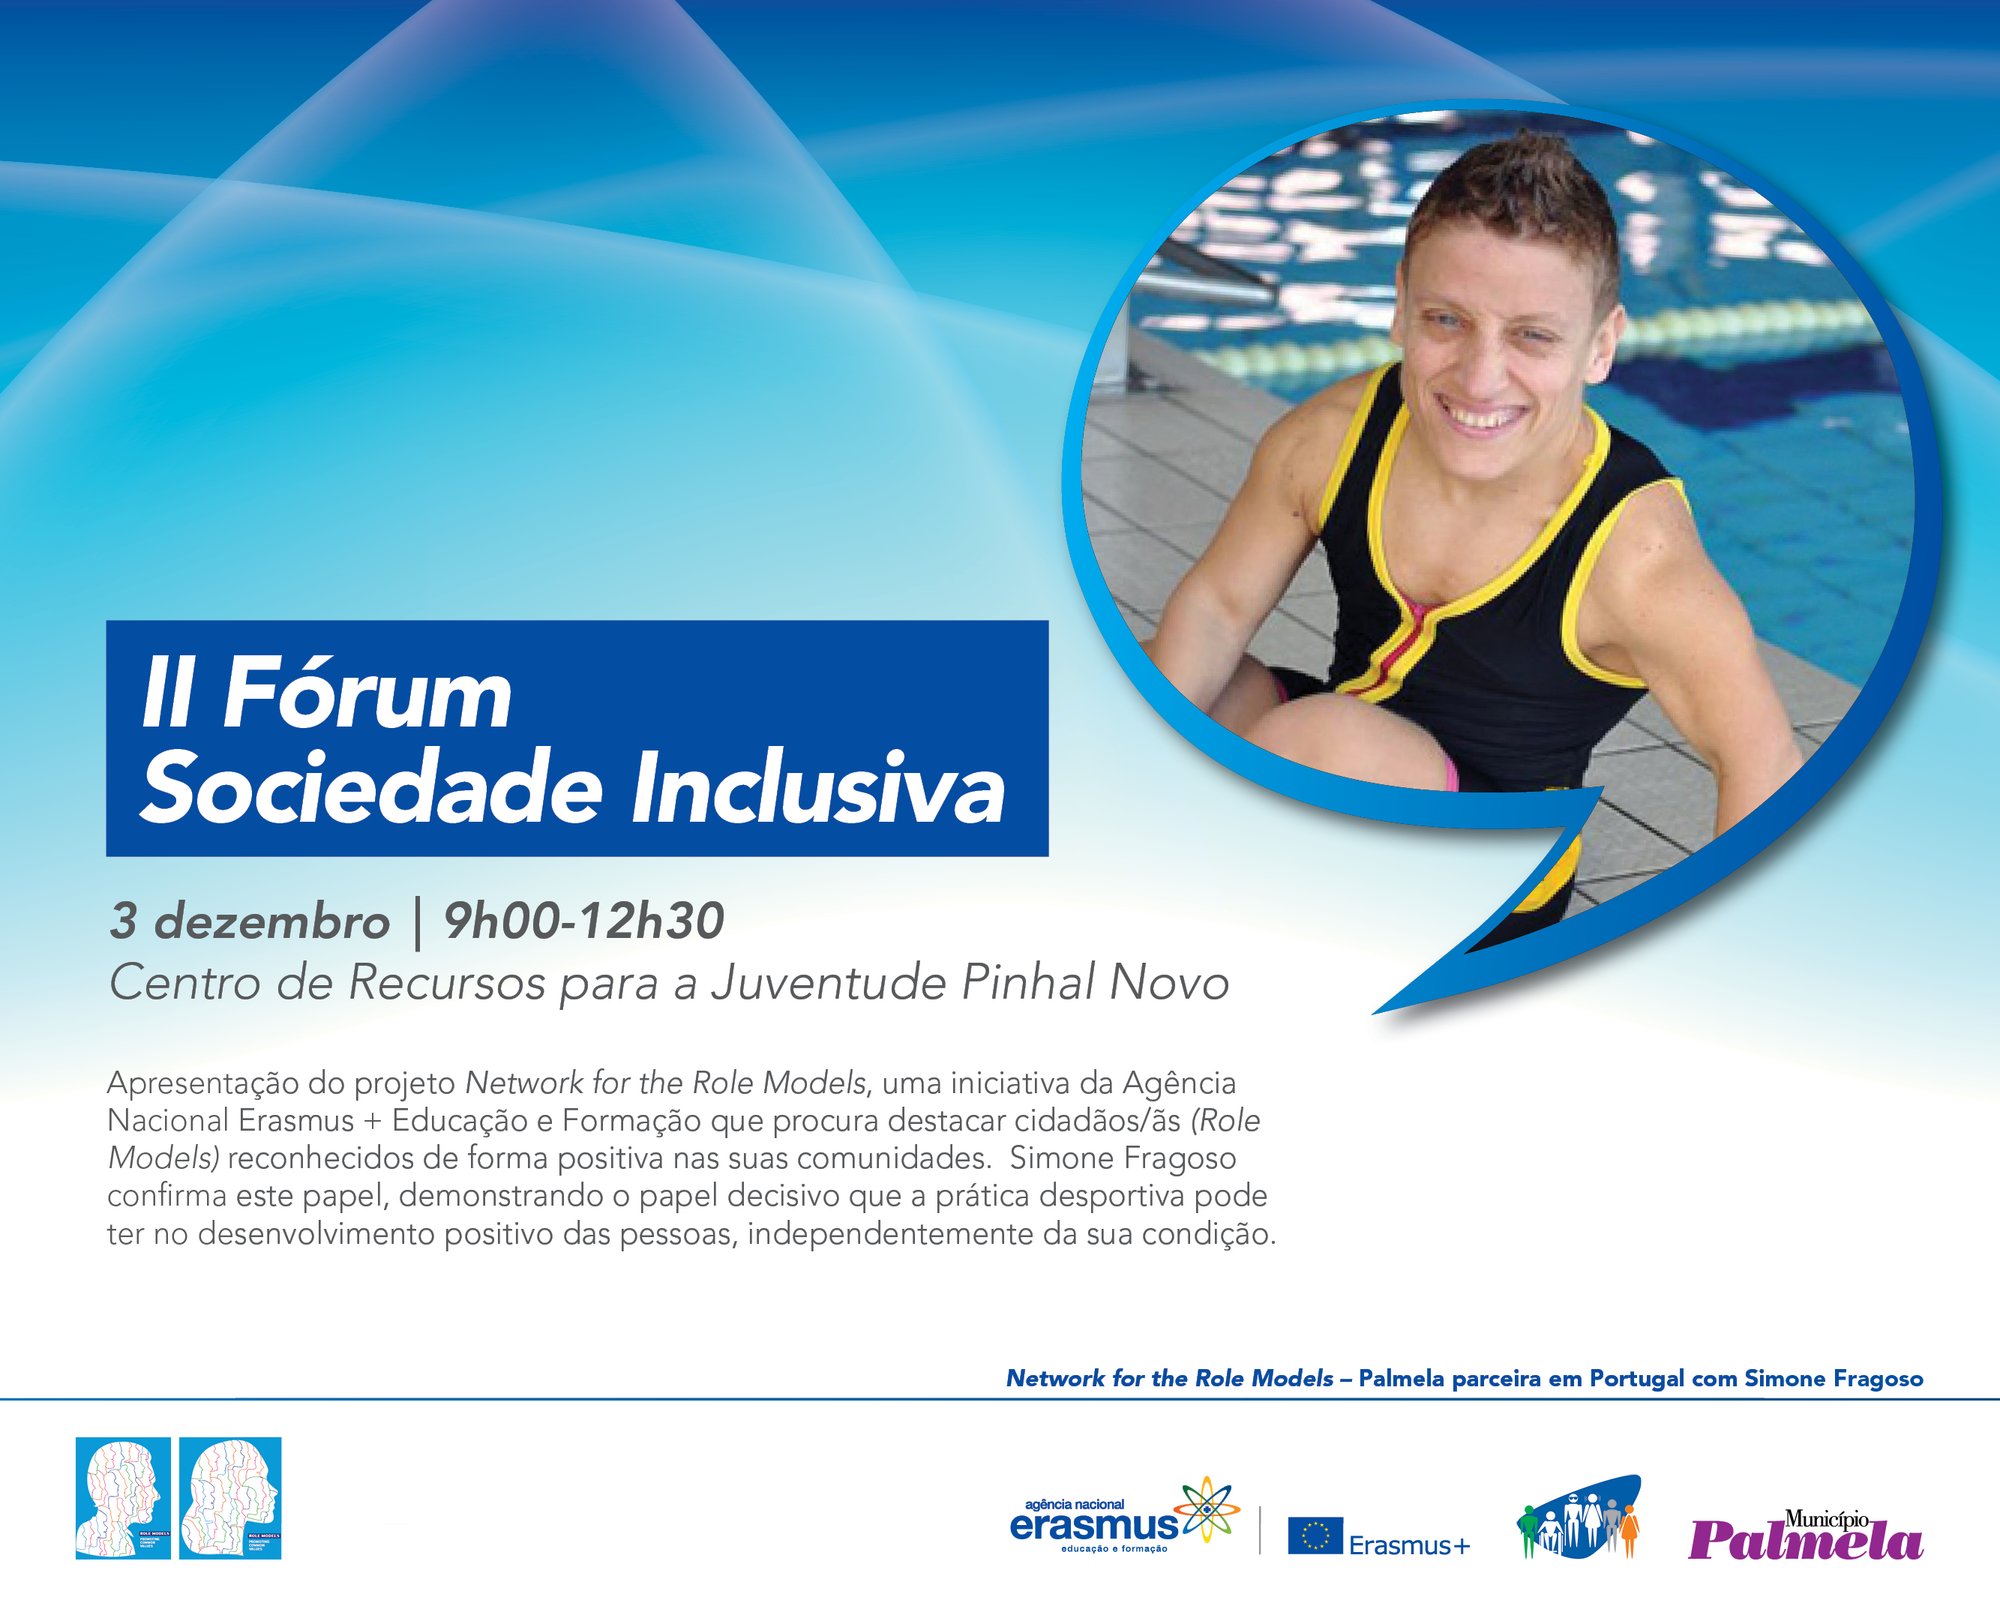 Projeto “Network for the Role Models” apresentado no II Fórum Sociedade Inclusiva